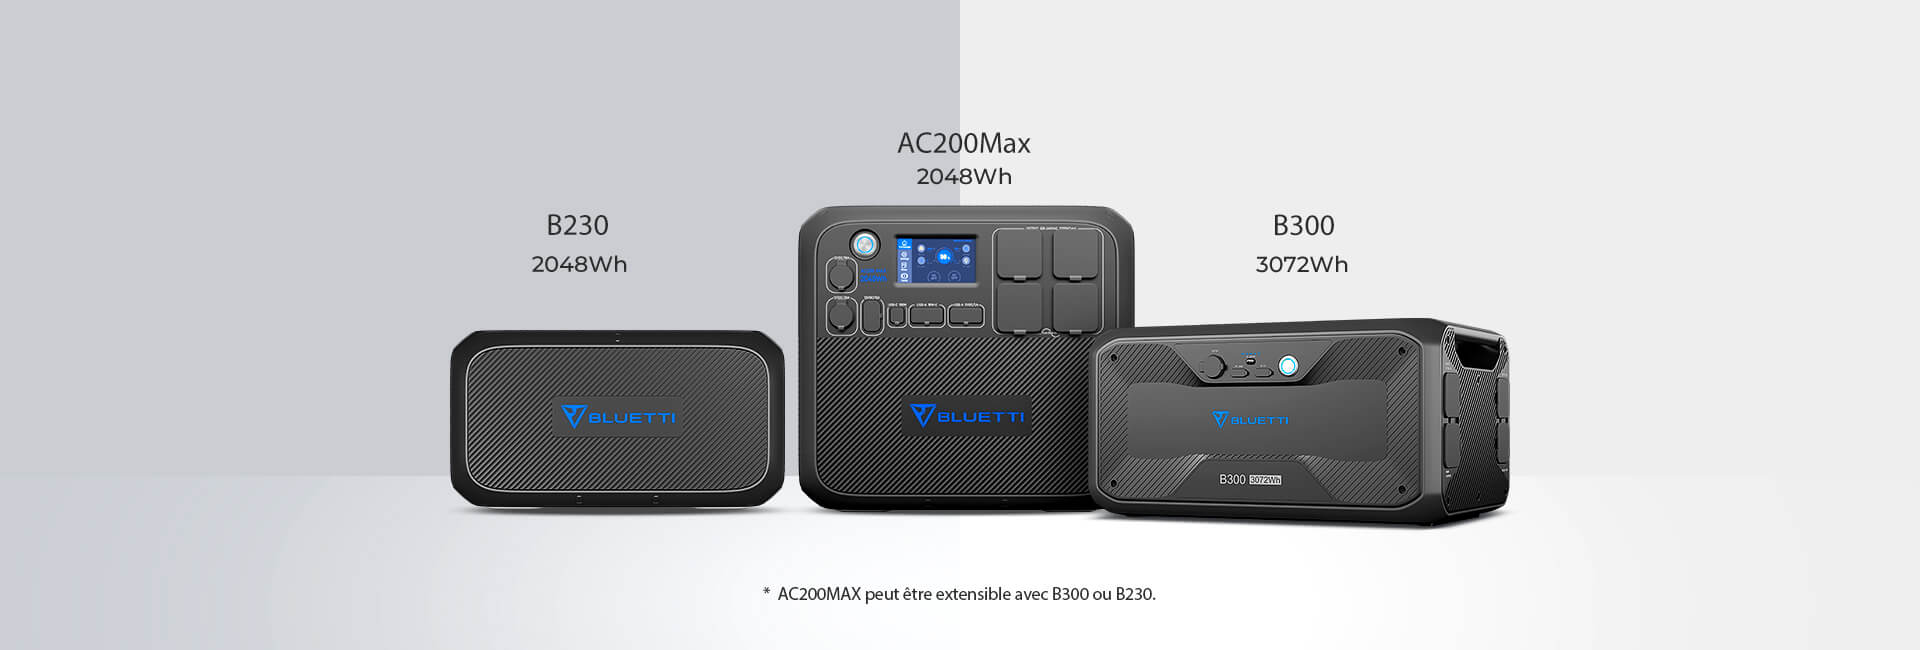 AC200MAX peut être extensible avec B230 ou B300